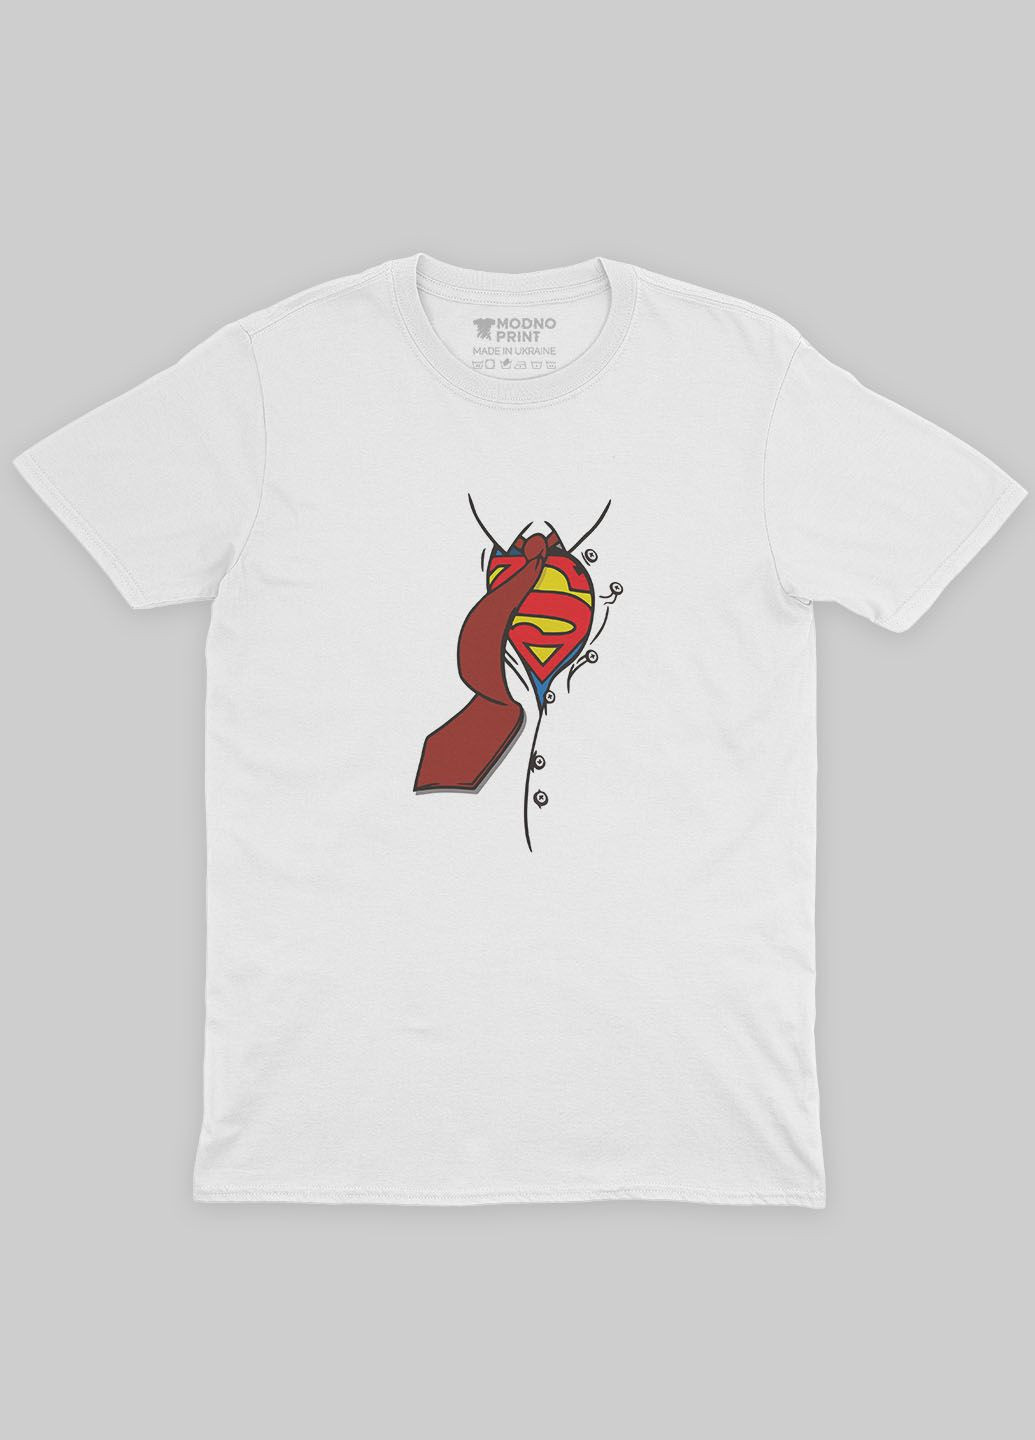 Біла демісезонна футболка для дівчинки з принтом супергероя - супермен (ts001-1-whi-006-009-002-g) Modno